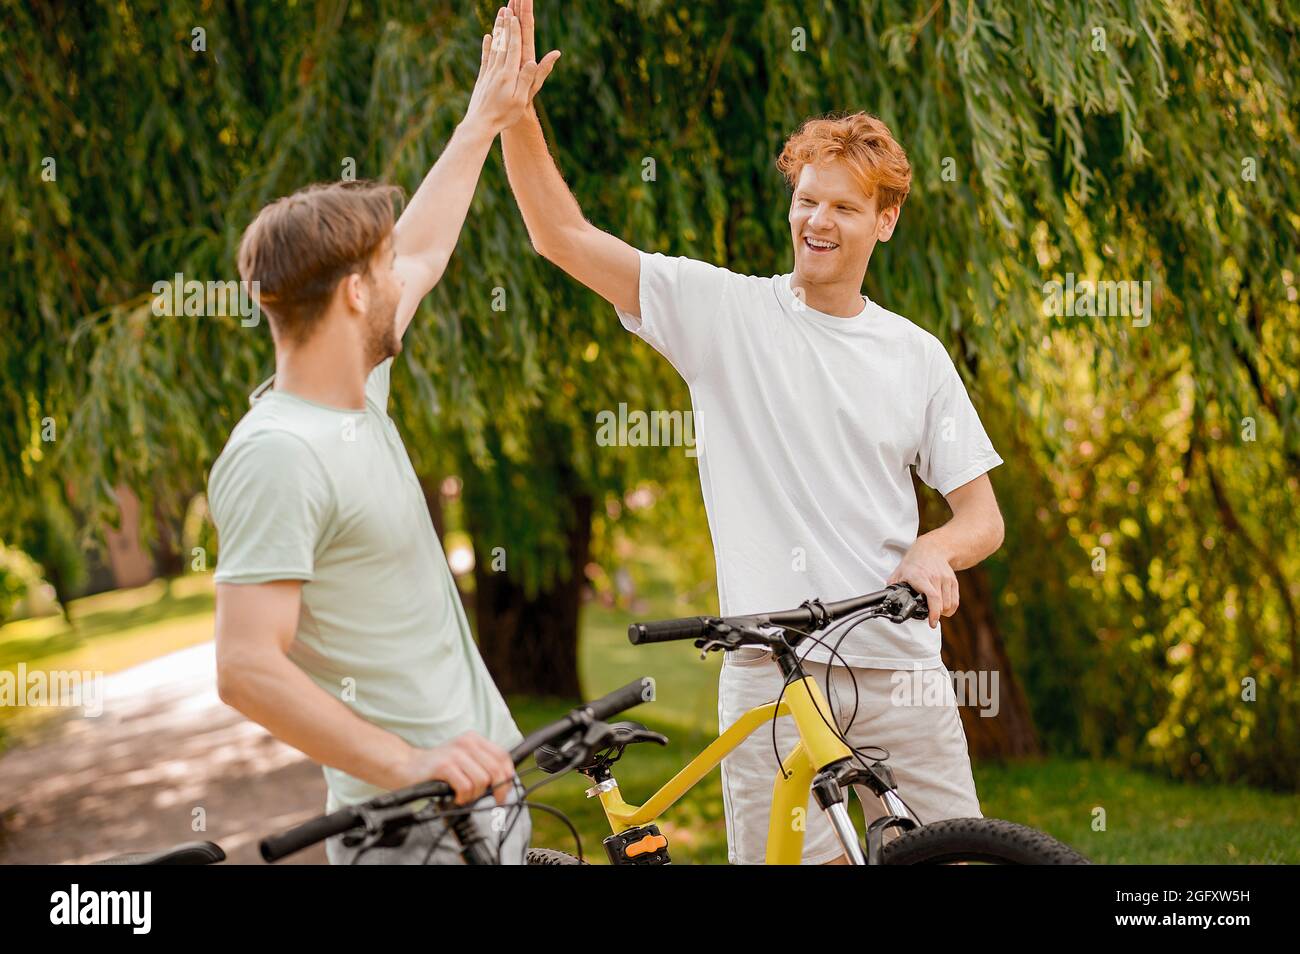 Ein fröhlicher, sportlicher junger Mann begrüßt seinen kumpel in einem Park Stockfoto